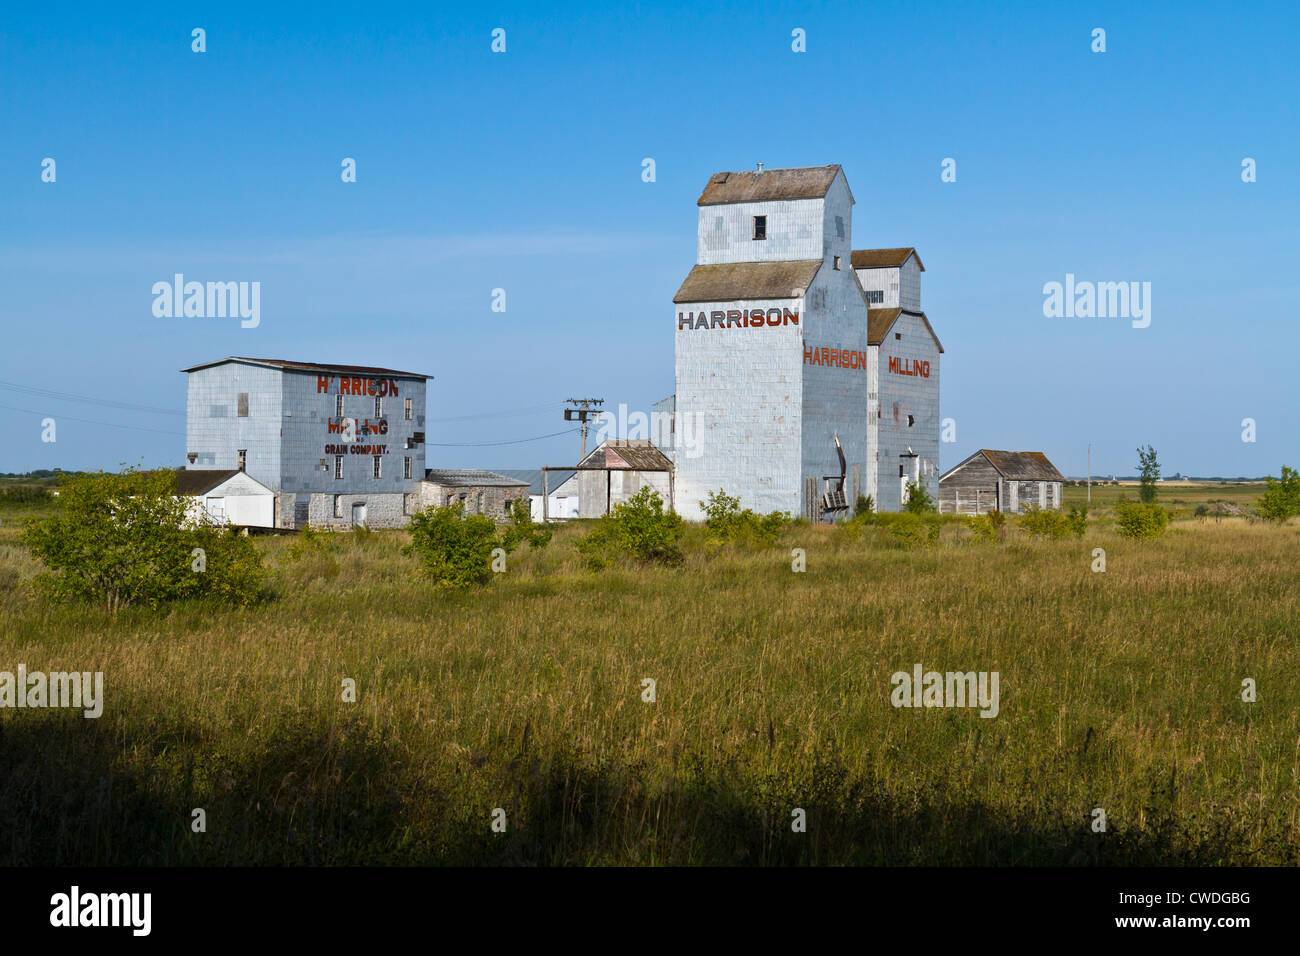 The Harrison Milling and Grain Company elevators in Homefield, Manitoba, Canada. Stock Photo